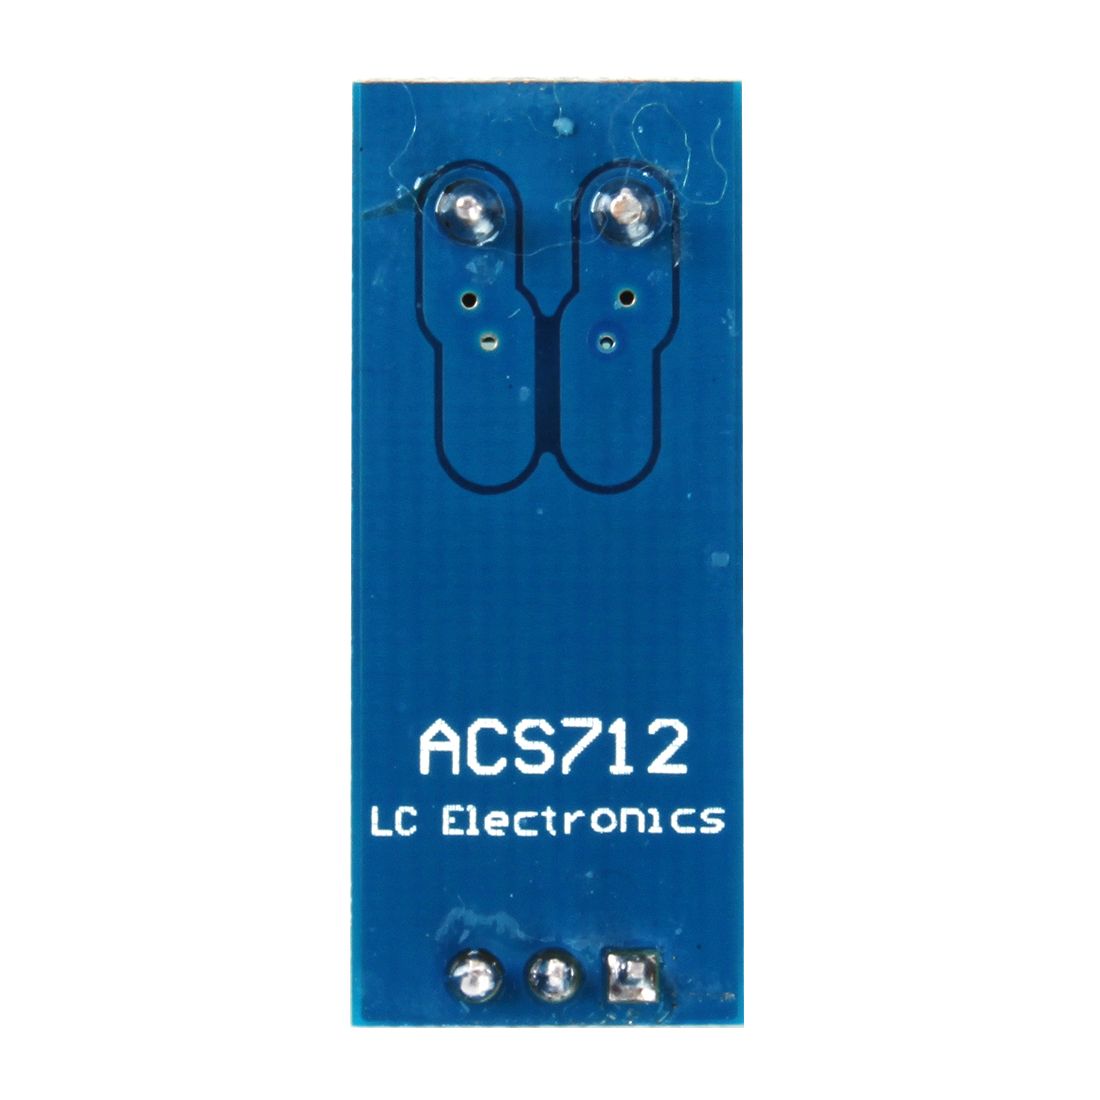 30pcs-5V-30A-ACS712-Ranging-Current-Sensor-Module-Board-1388406